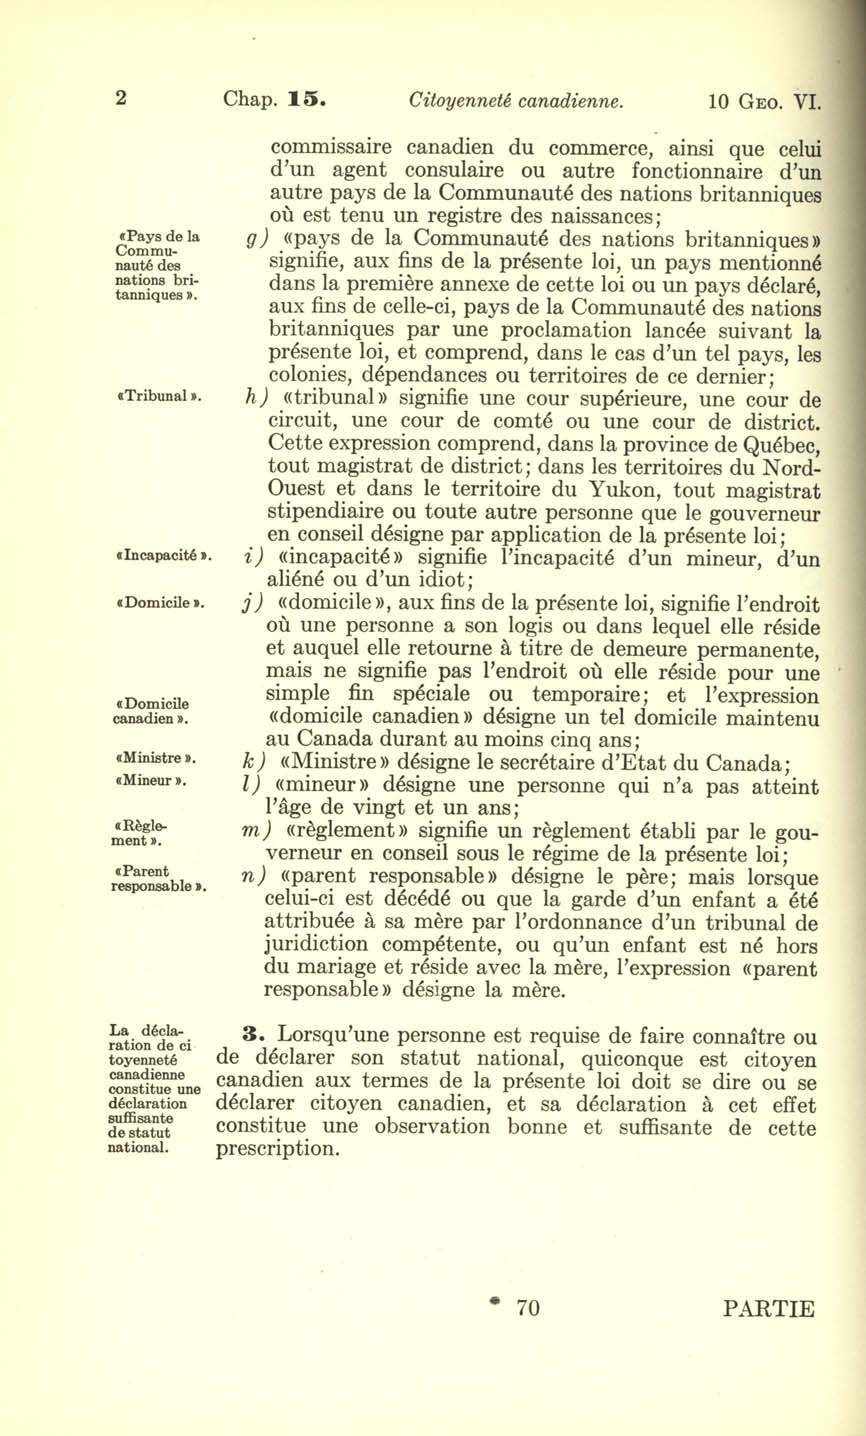 Chap. 15 Page 70 Loi sur la citoyenneté canadienne, 1947